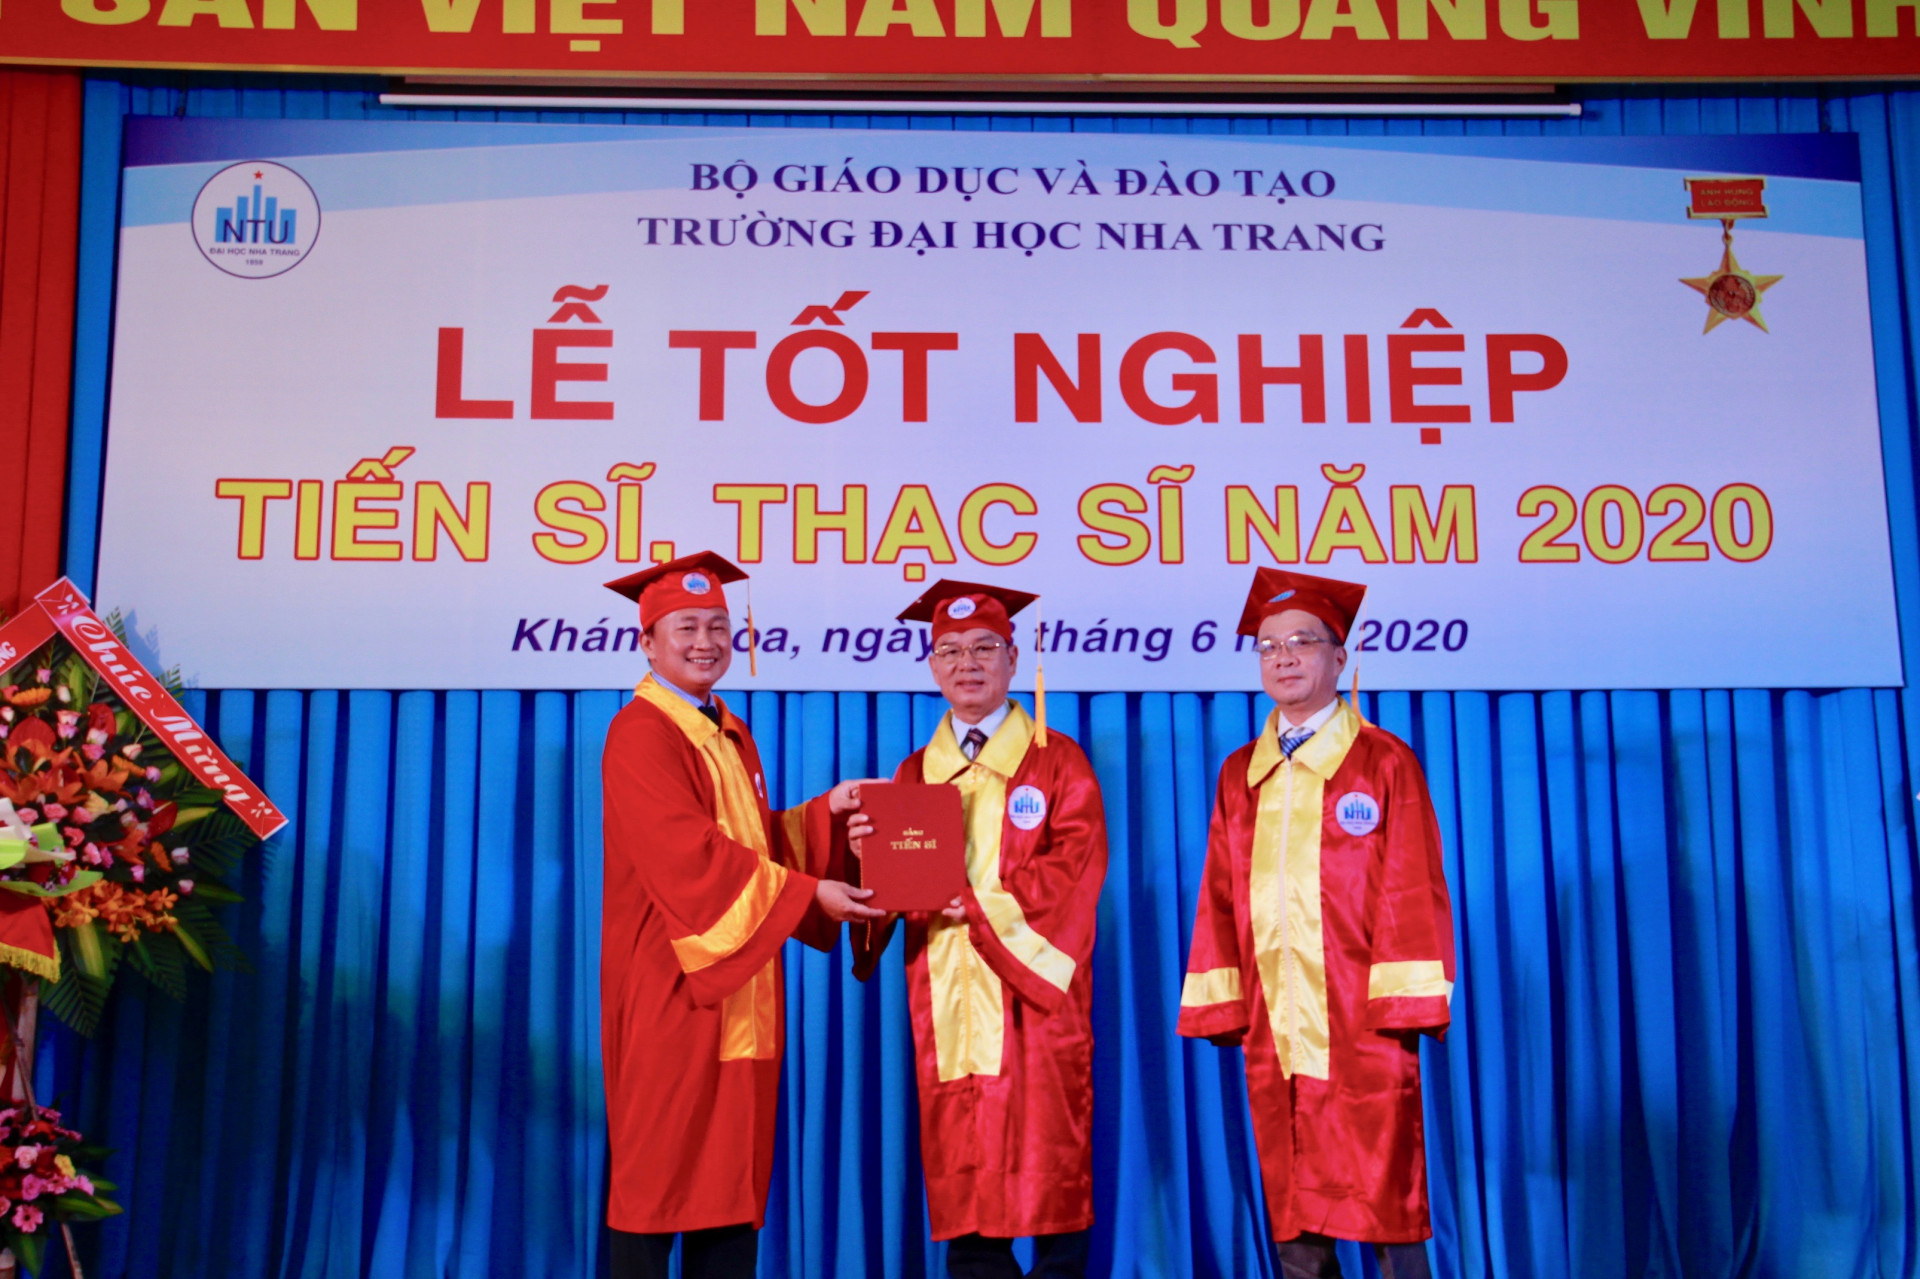 TS. Quách Hoài Nam, Phó Hiệu trưởng Trường Đại học Nha Trang trao bằng tốt nghiệp tiến sĩ.